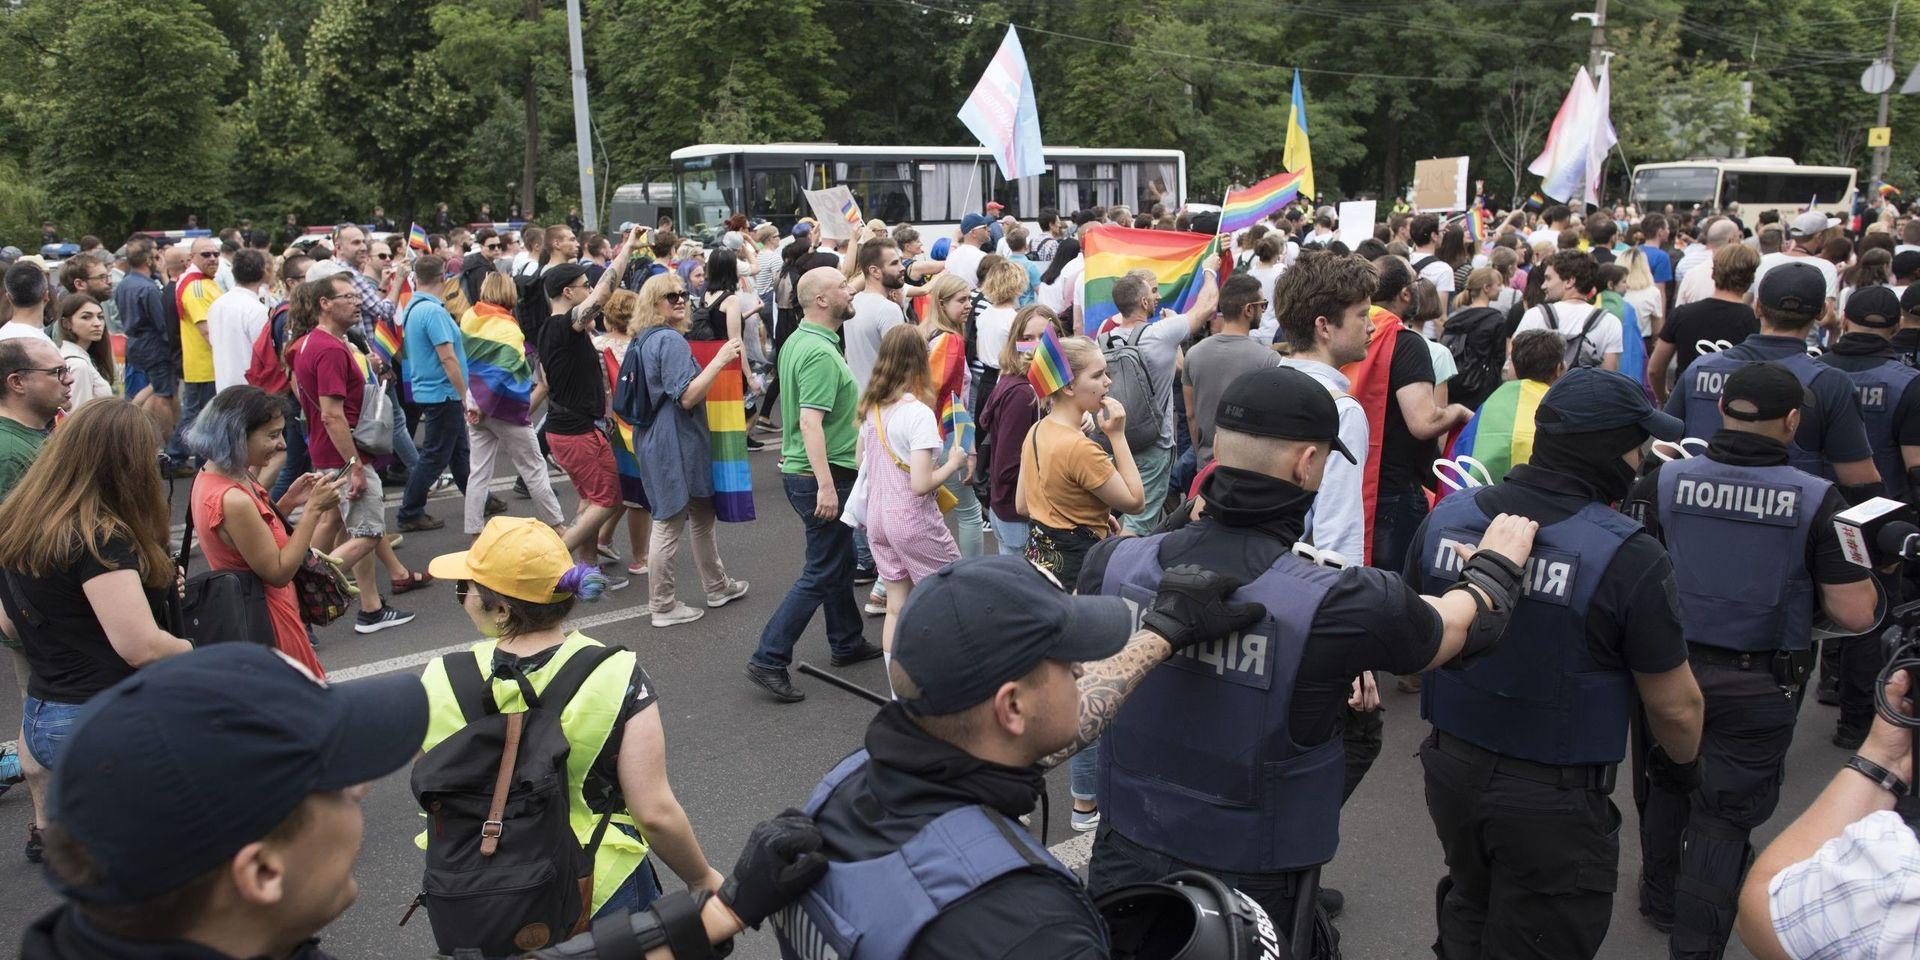 Prideparaden i Kiev 2018, som inte varade mer än 20 minuter – trots skydd från kravallpolis. 